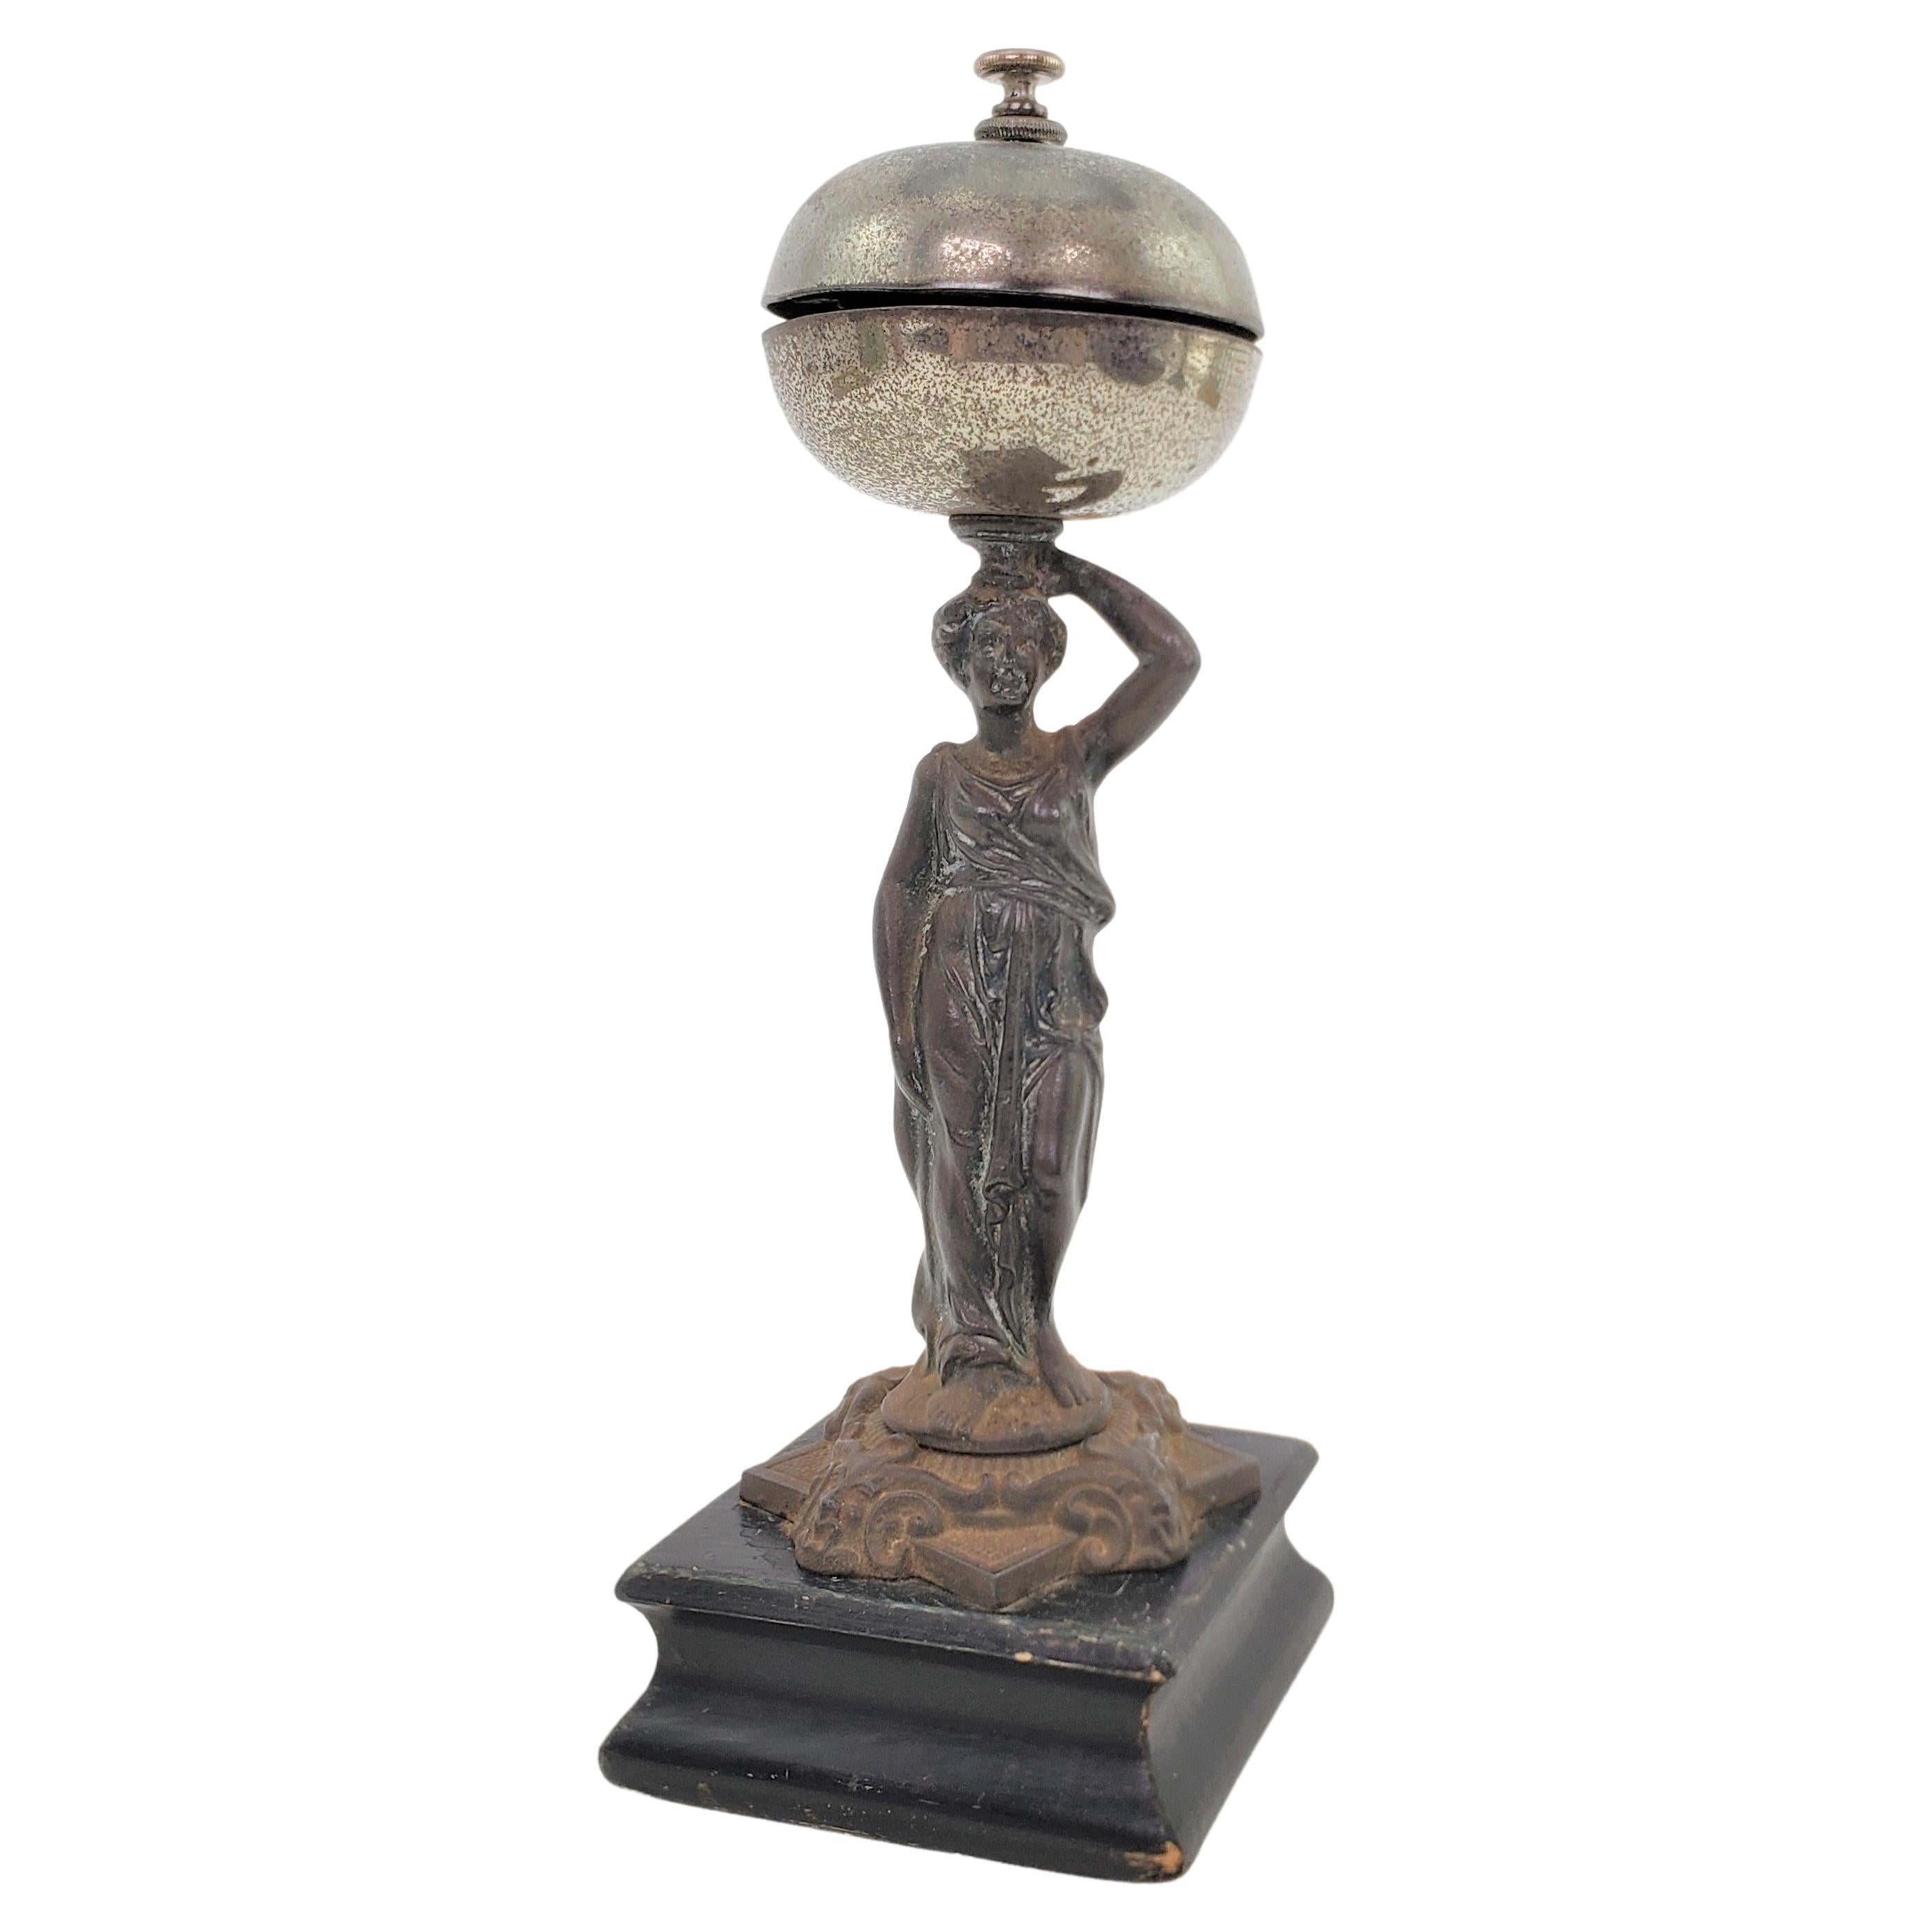 Ancienne cloche de service ou de dîner en métal coulé, figurative et mécanique, en forme de femme vêtue